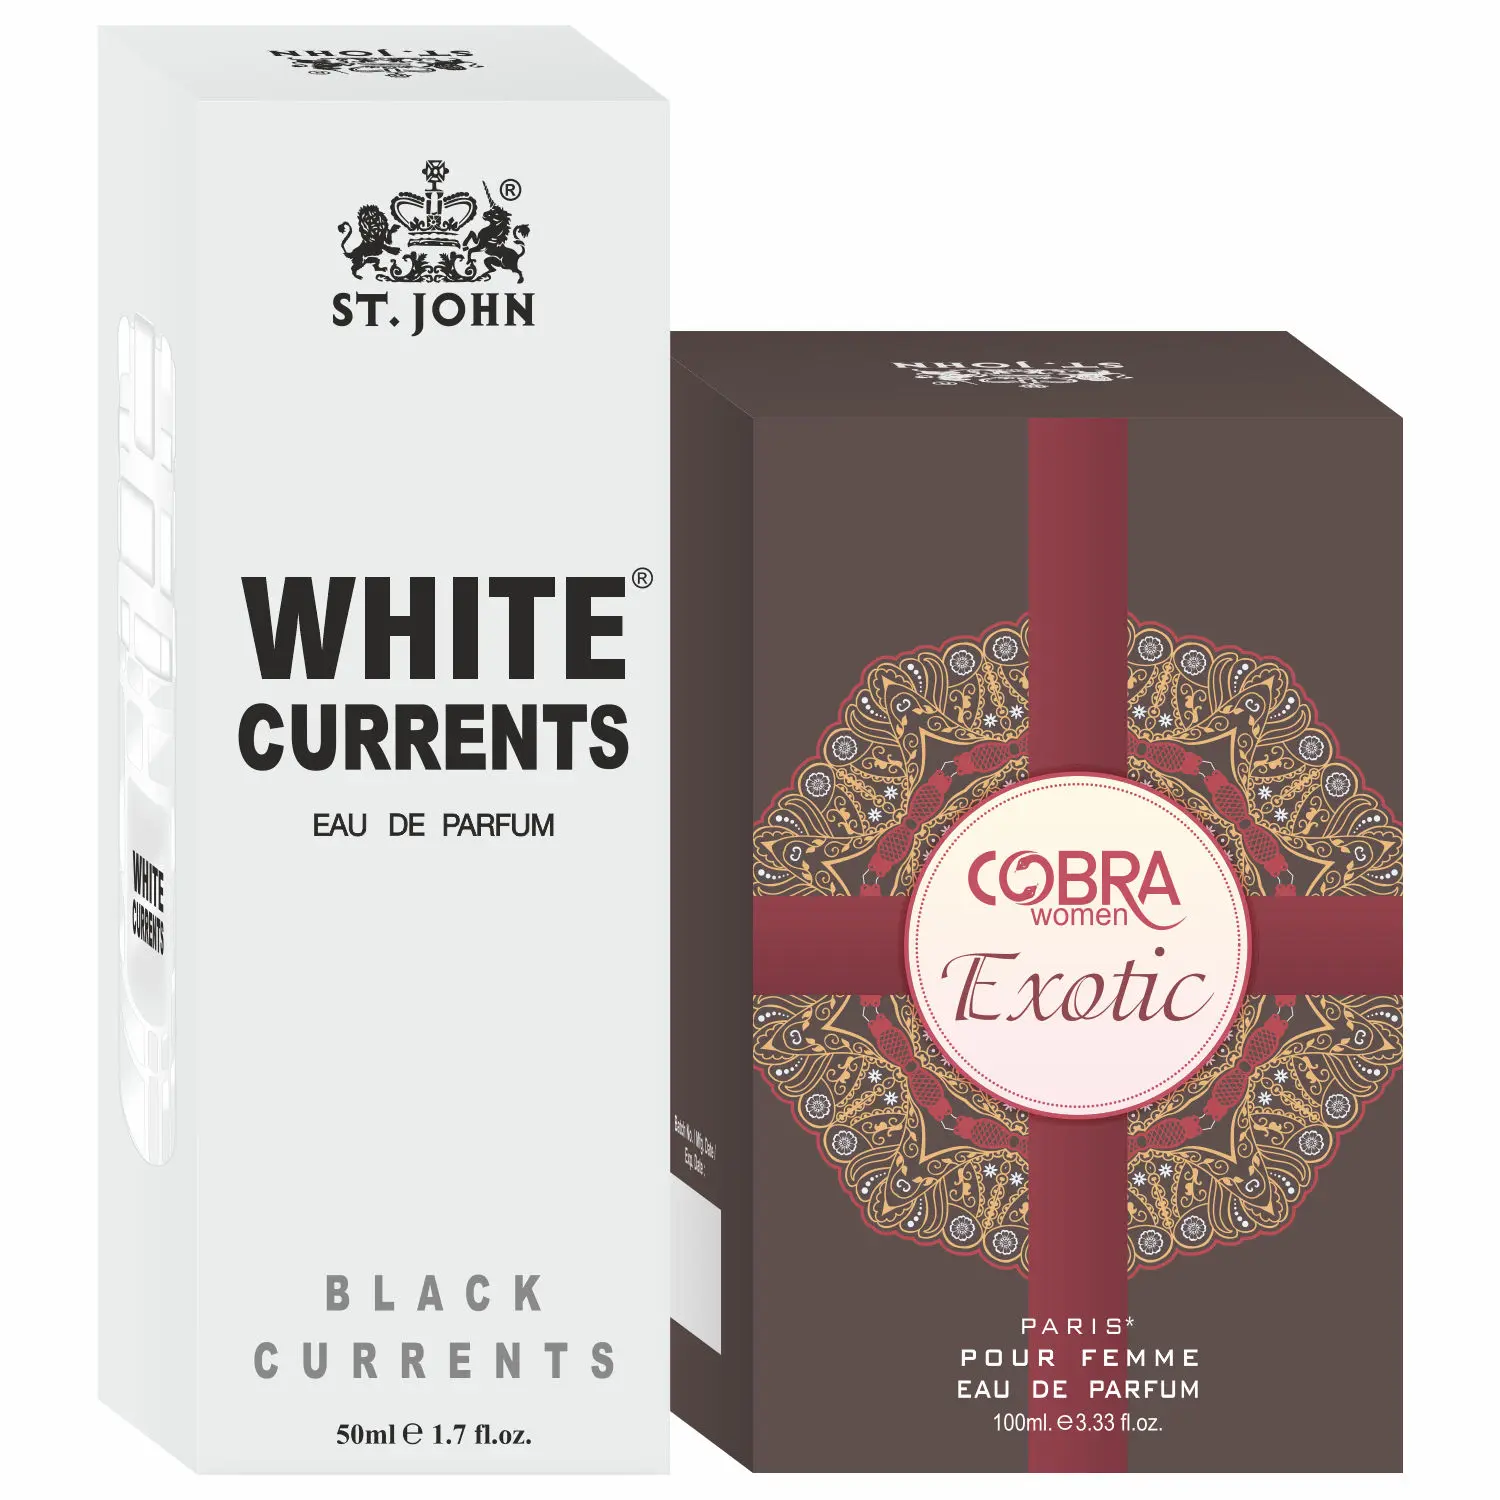 ST-JOHN Cobra Exotic 100ml & White Current 50ml Body Perfume Combo Gift Pack Eau de Parfum - 150 ml (For Men & Women)